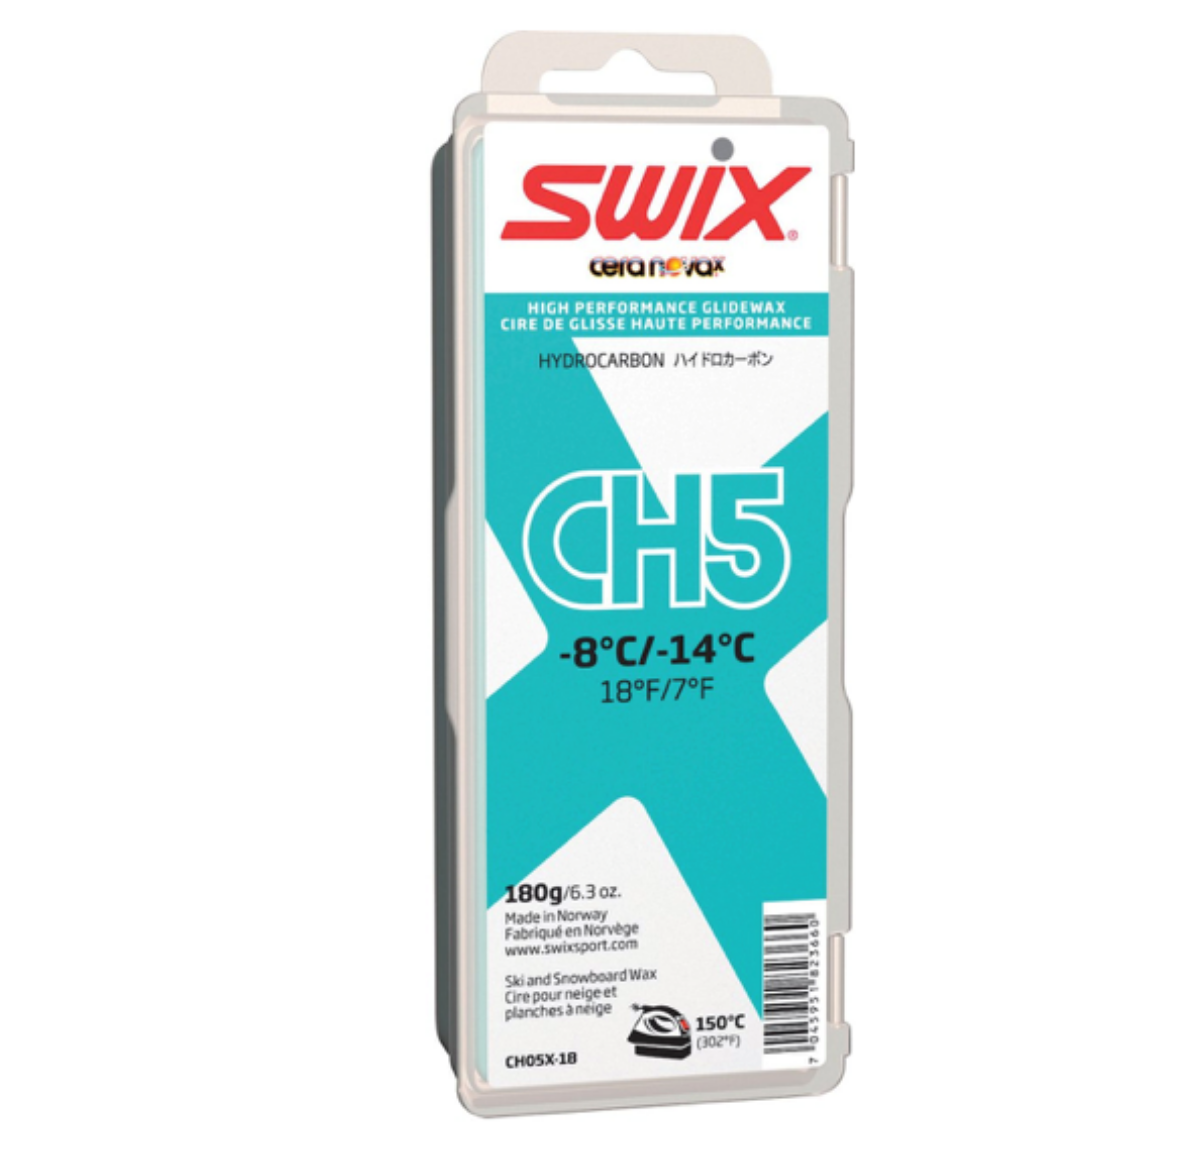 Bilde av Swix  CH5X Turquoise, -8 °C/-14°C, 60g